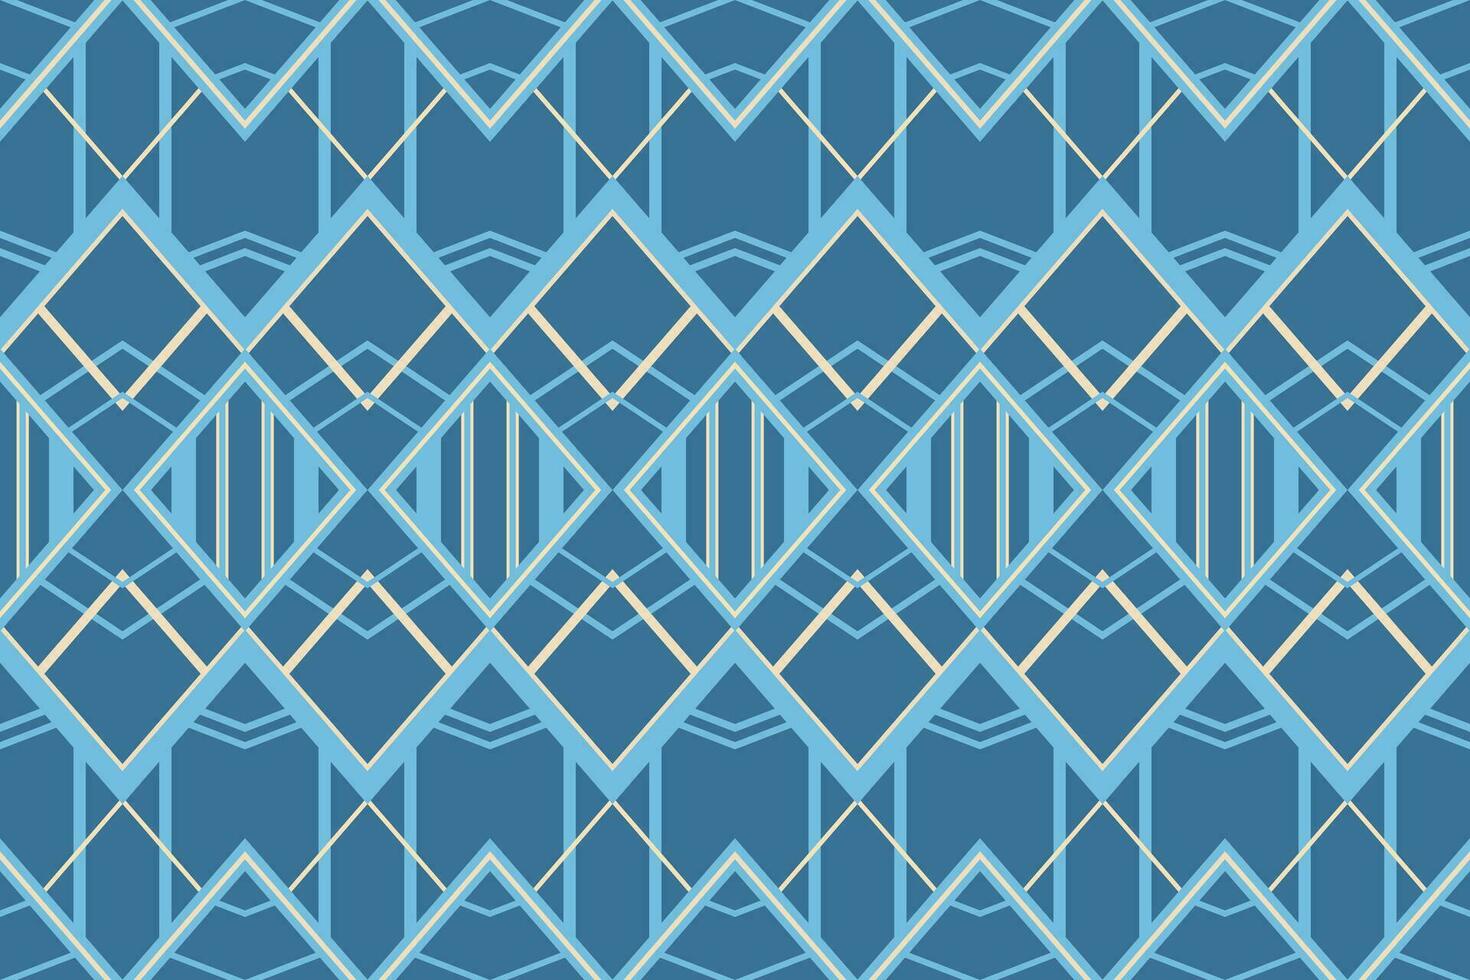 damast stijl patroon voor textiel en decoratie.naadloos patroon in tribaal.inheems aztec boho vector ontwerp.achtergrond lap patroon met traditioneel stijl, ontwerp: voor decoratie en textiel